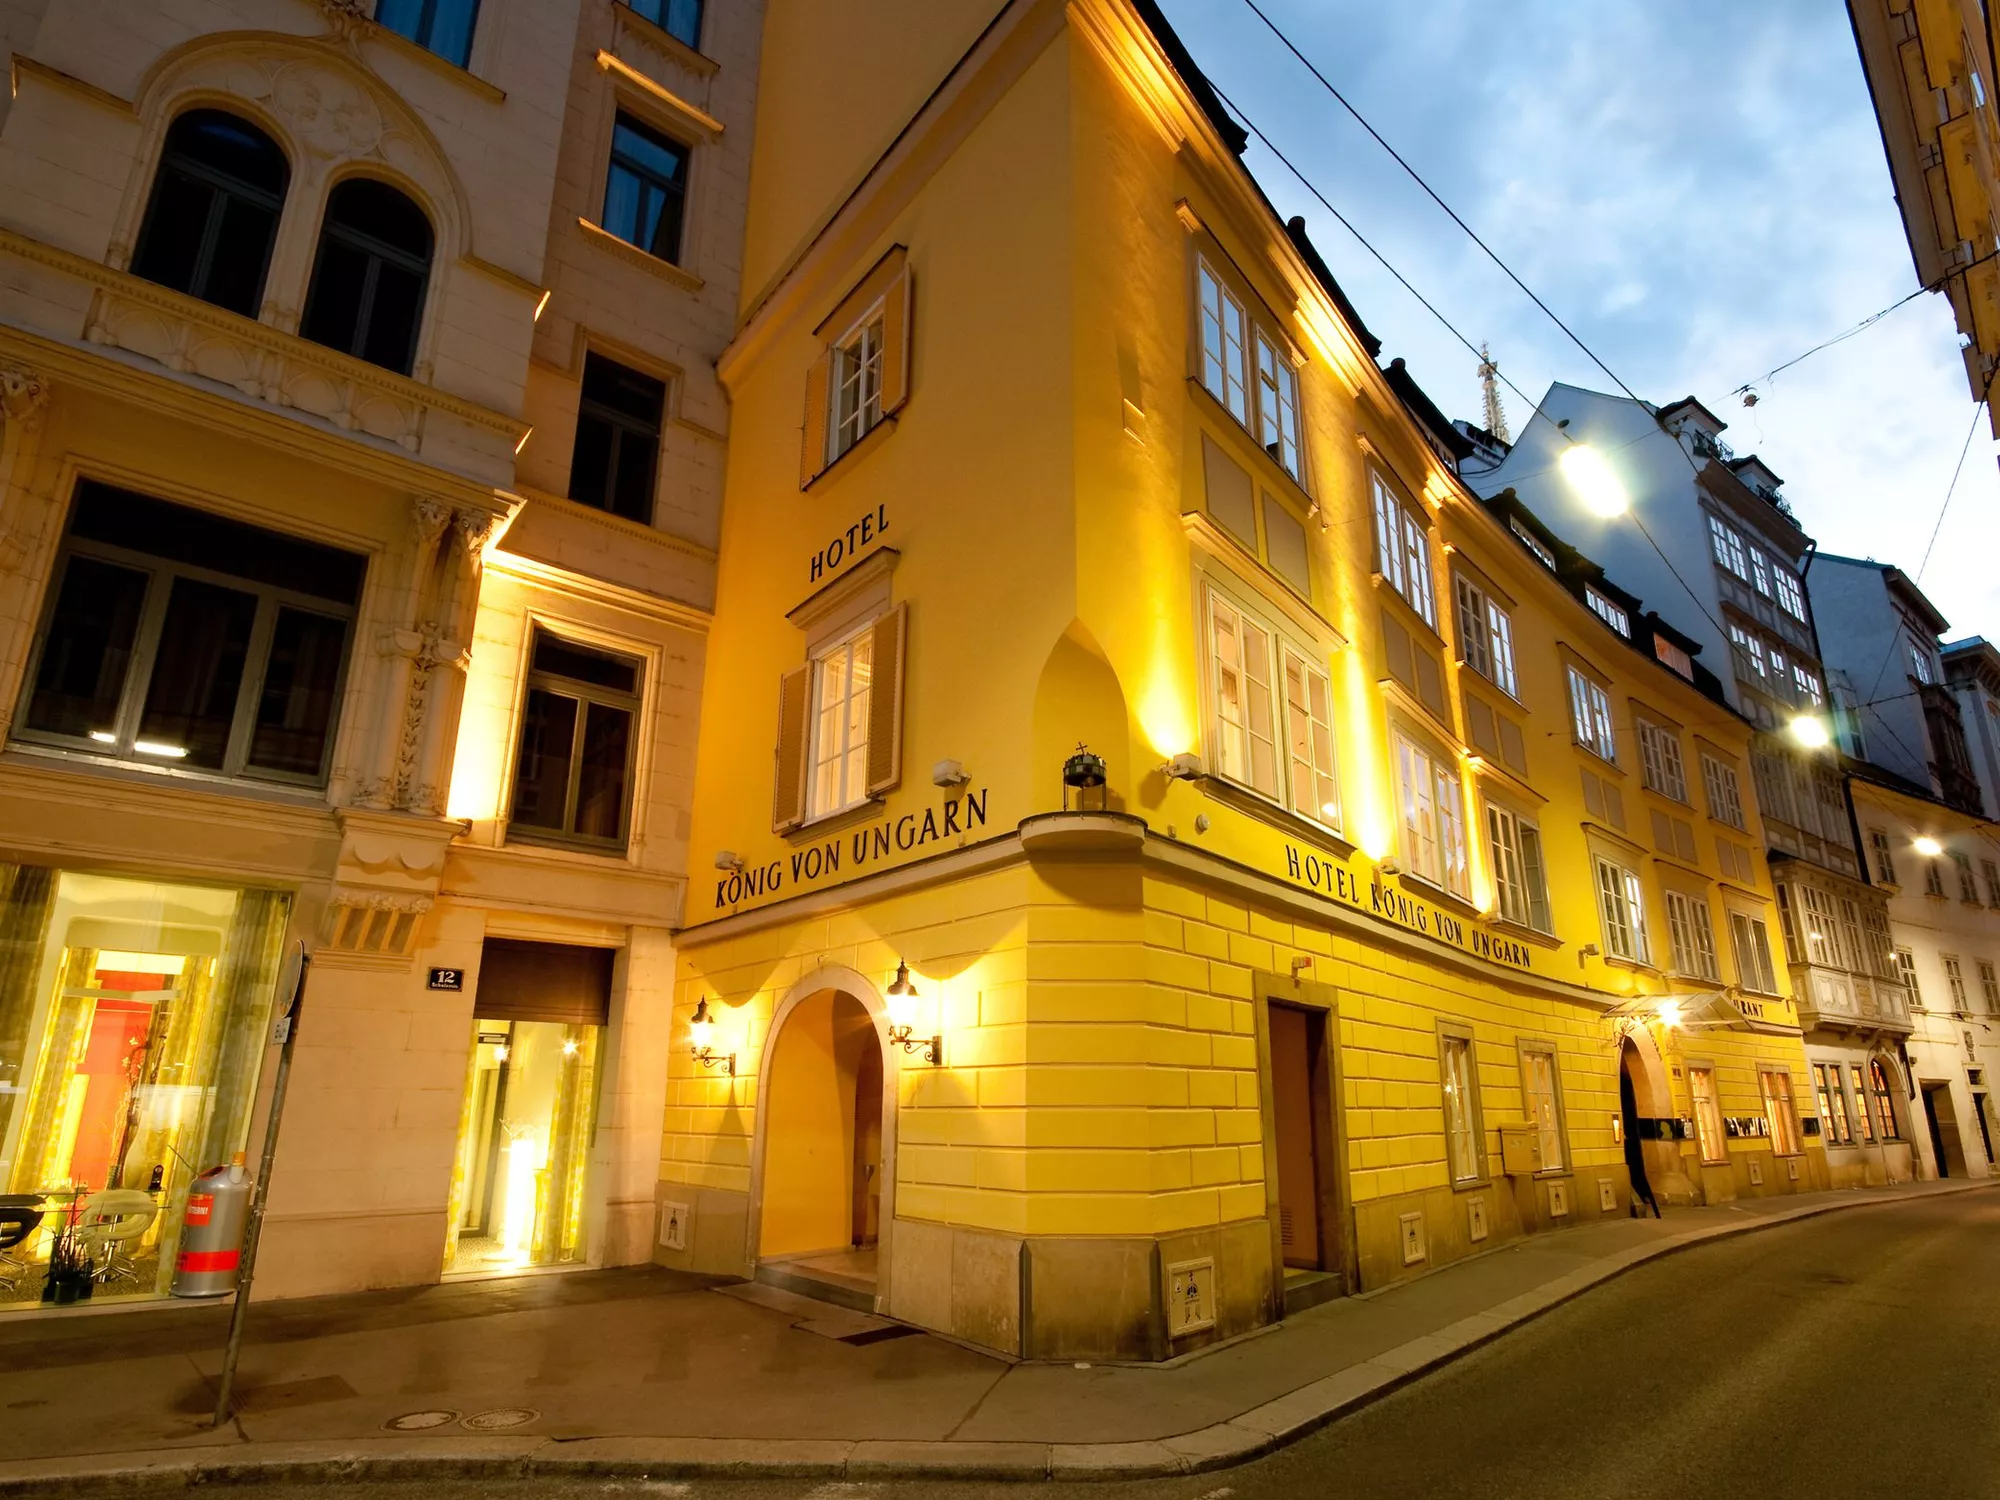 Aussenaufnahme am Abend vom Hotel König von Ungarn im Zentrum von Wien